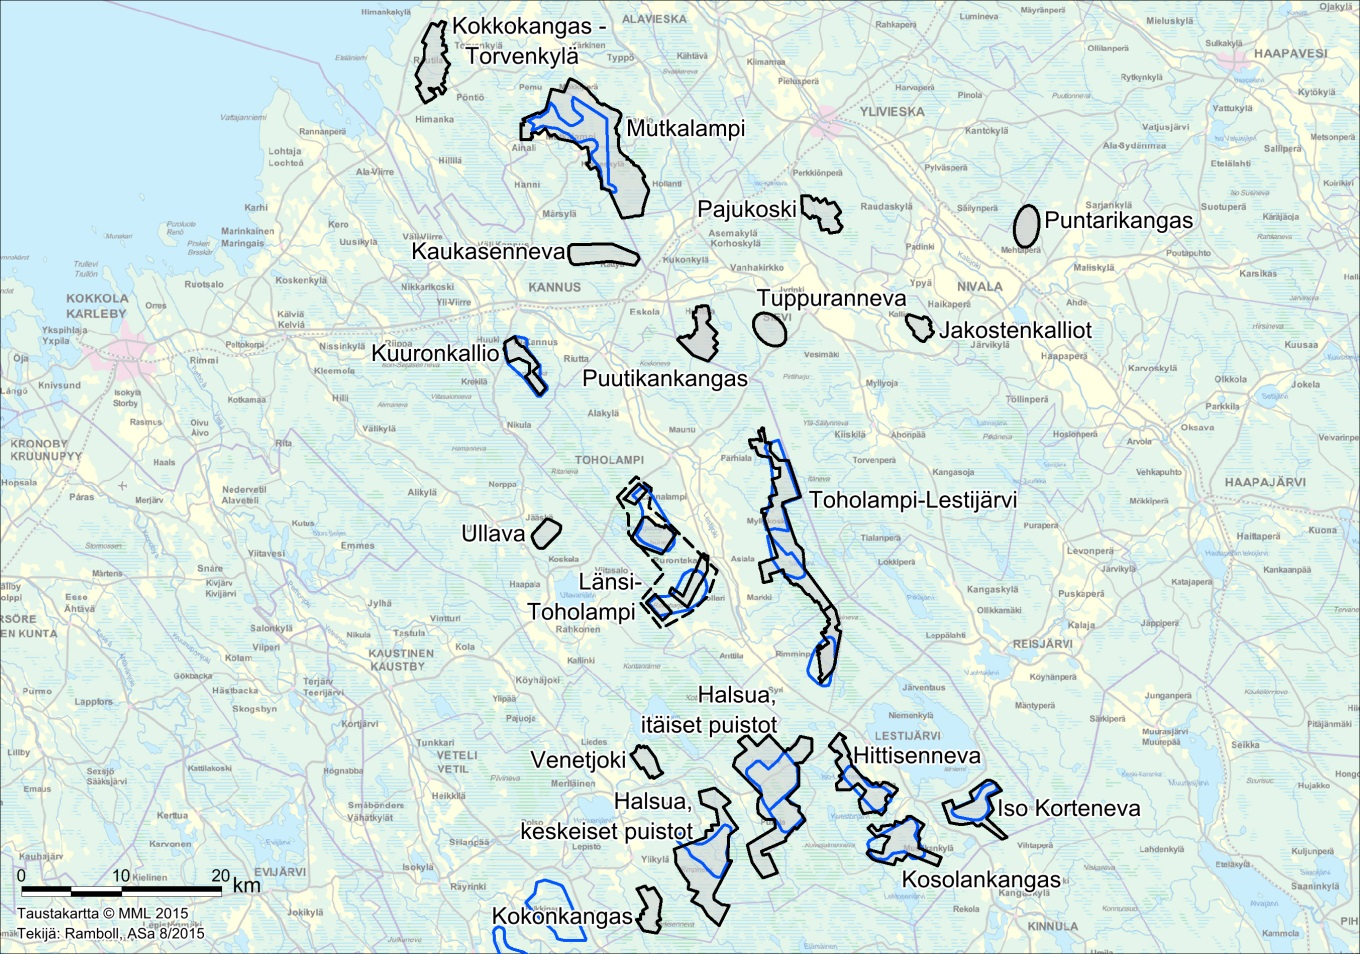 Kokonkangas, Halsua: Halsuan Tuulivoima Oy suunnittelee enintään 9 tuulivoimalan puistoa. Etäisyys hankealueelle on noin 26 km.